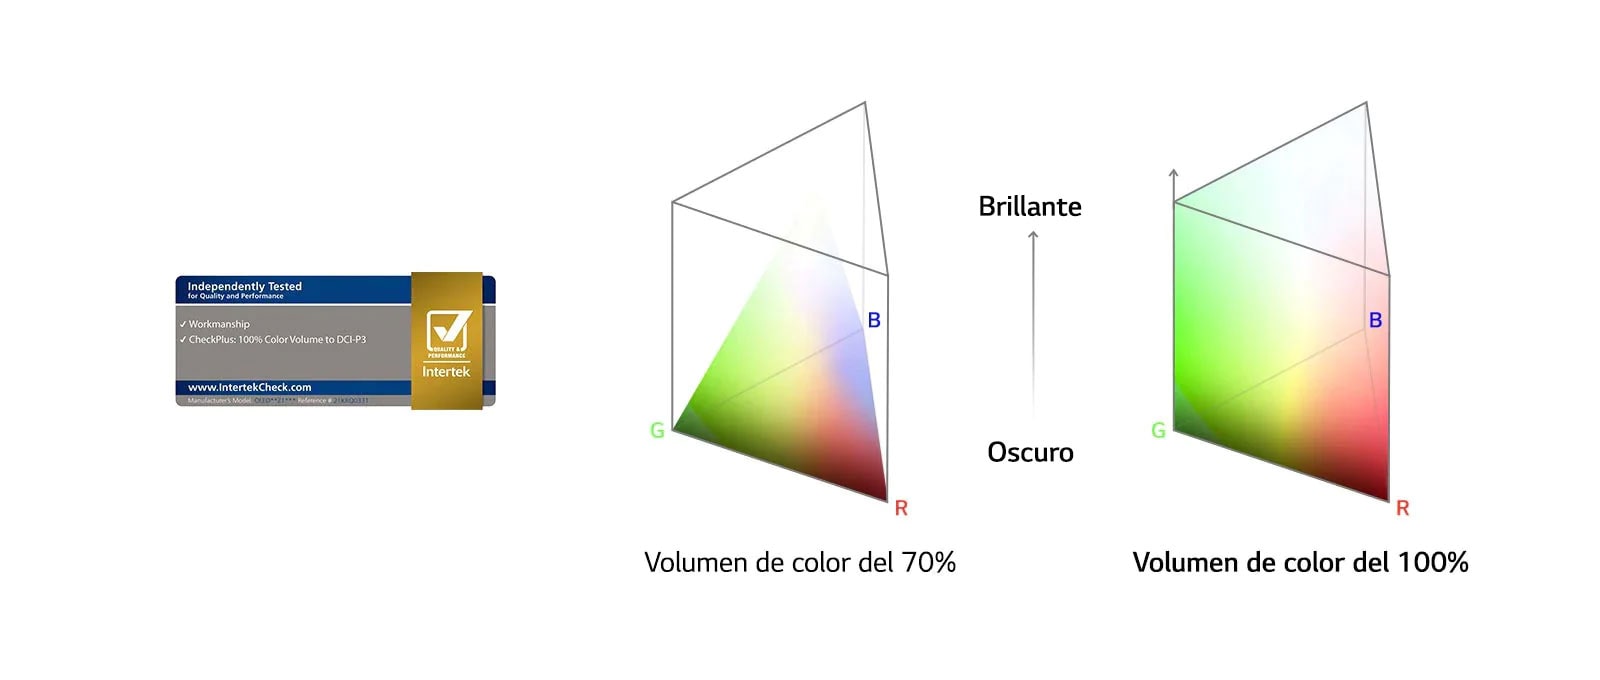 Un logotipo de volumen de color al 100% certificado por Intertek. Un gráfico de comparación entre el 70% y el 100% de volumen de color.